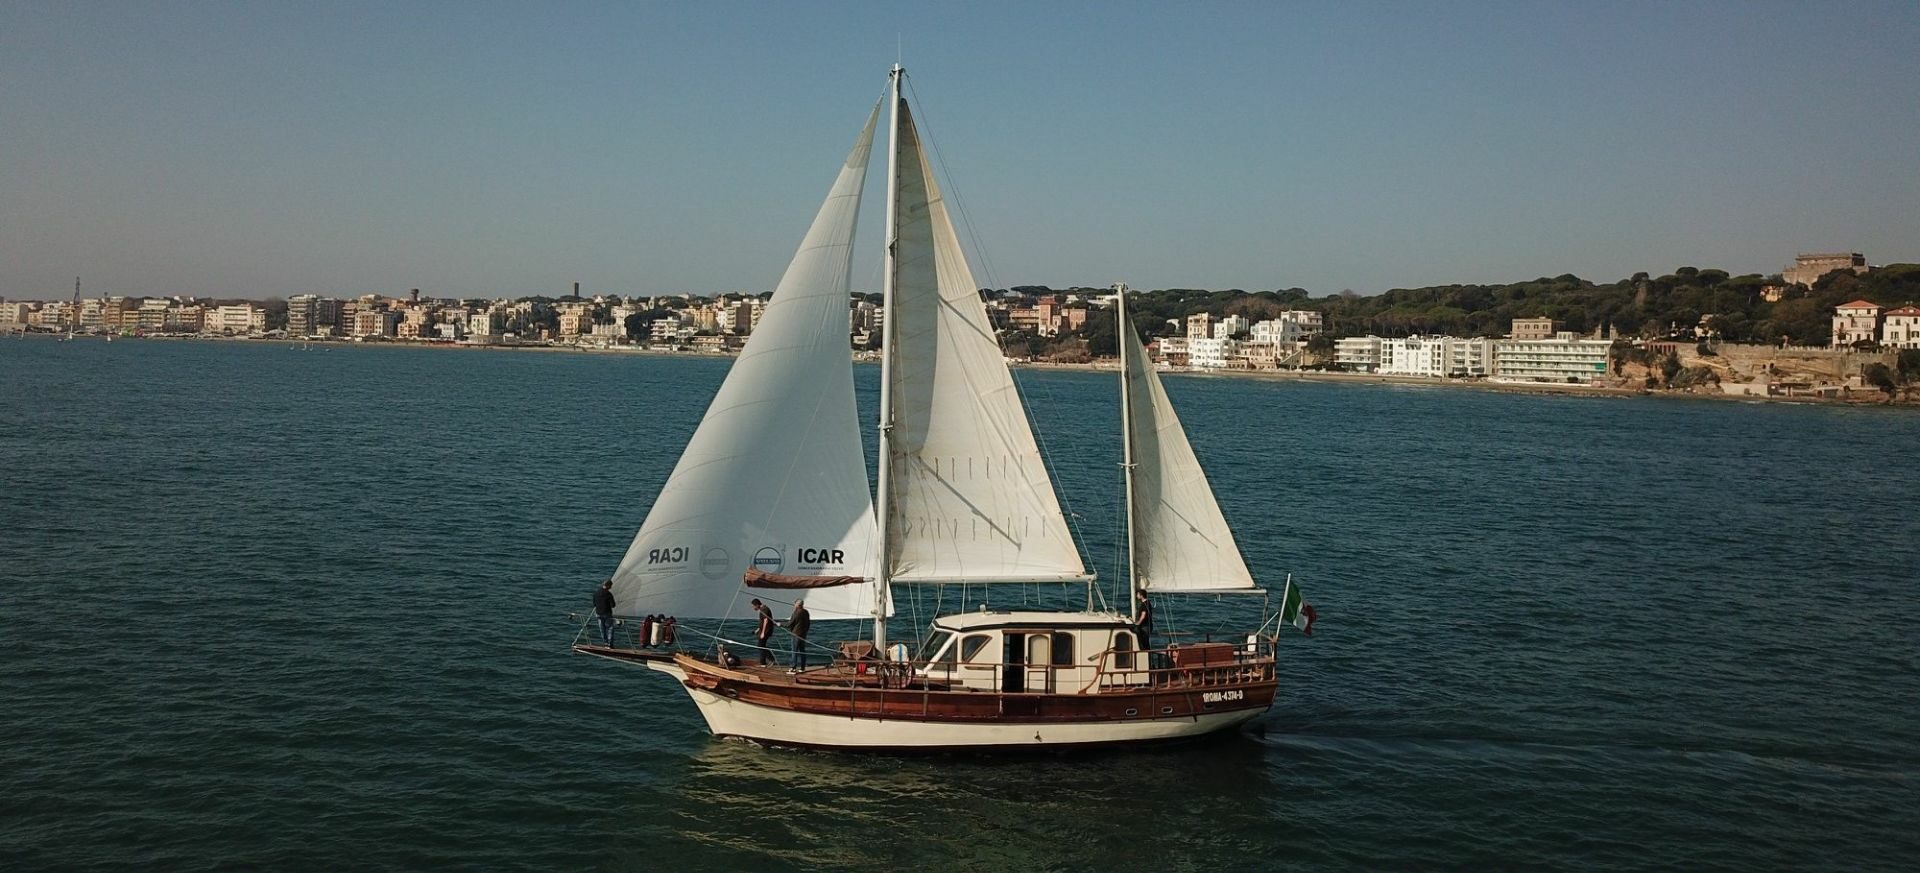 Escursioni in barca a vela Palmarola